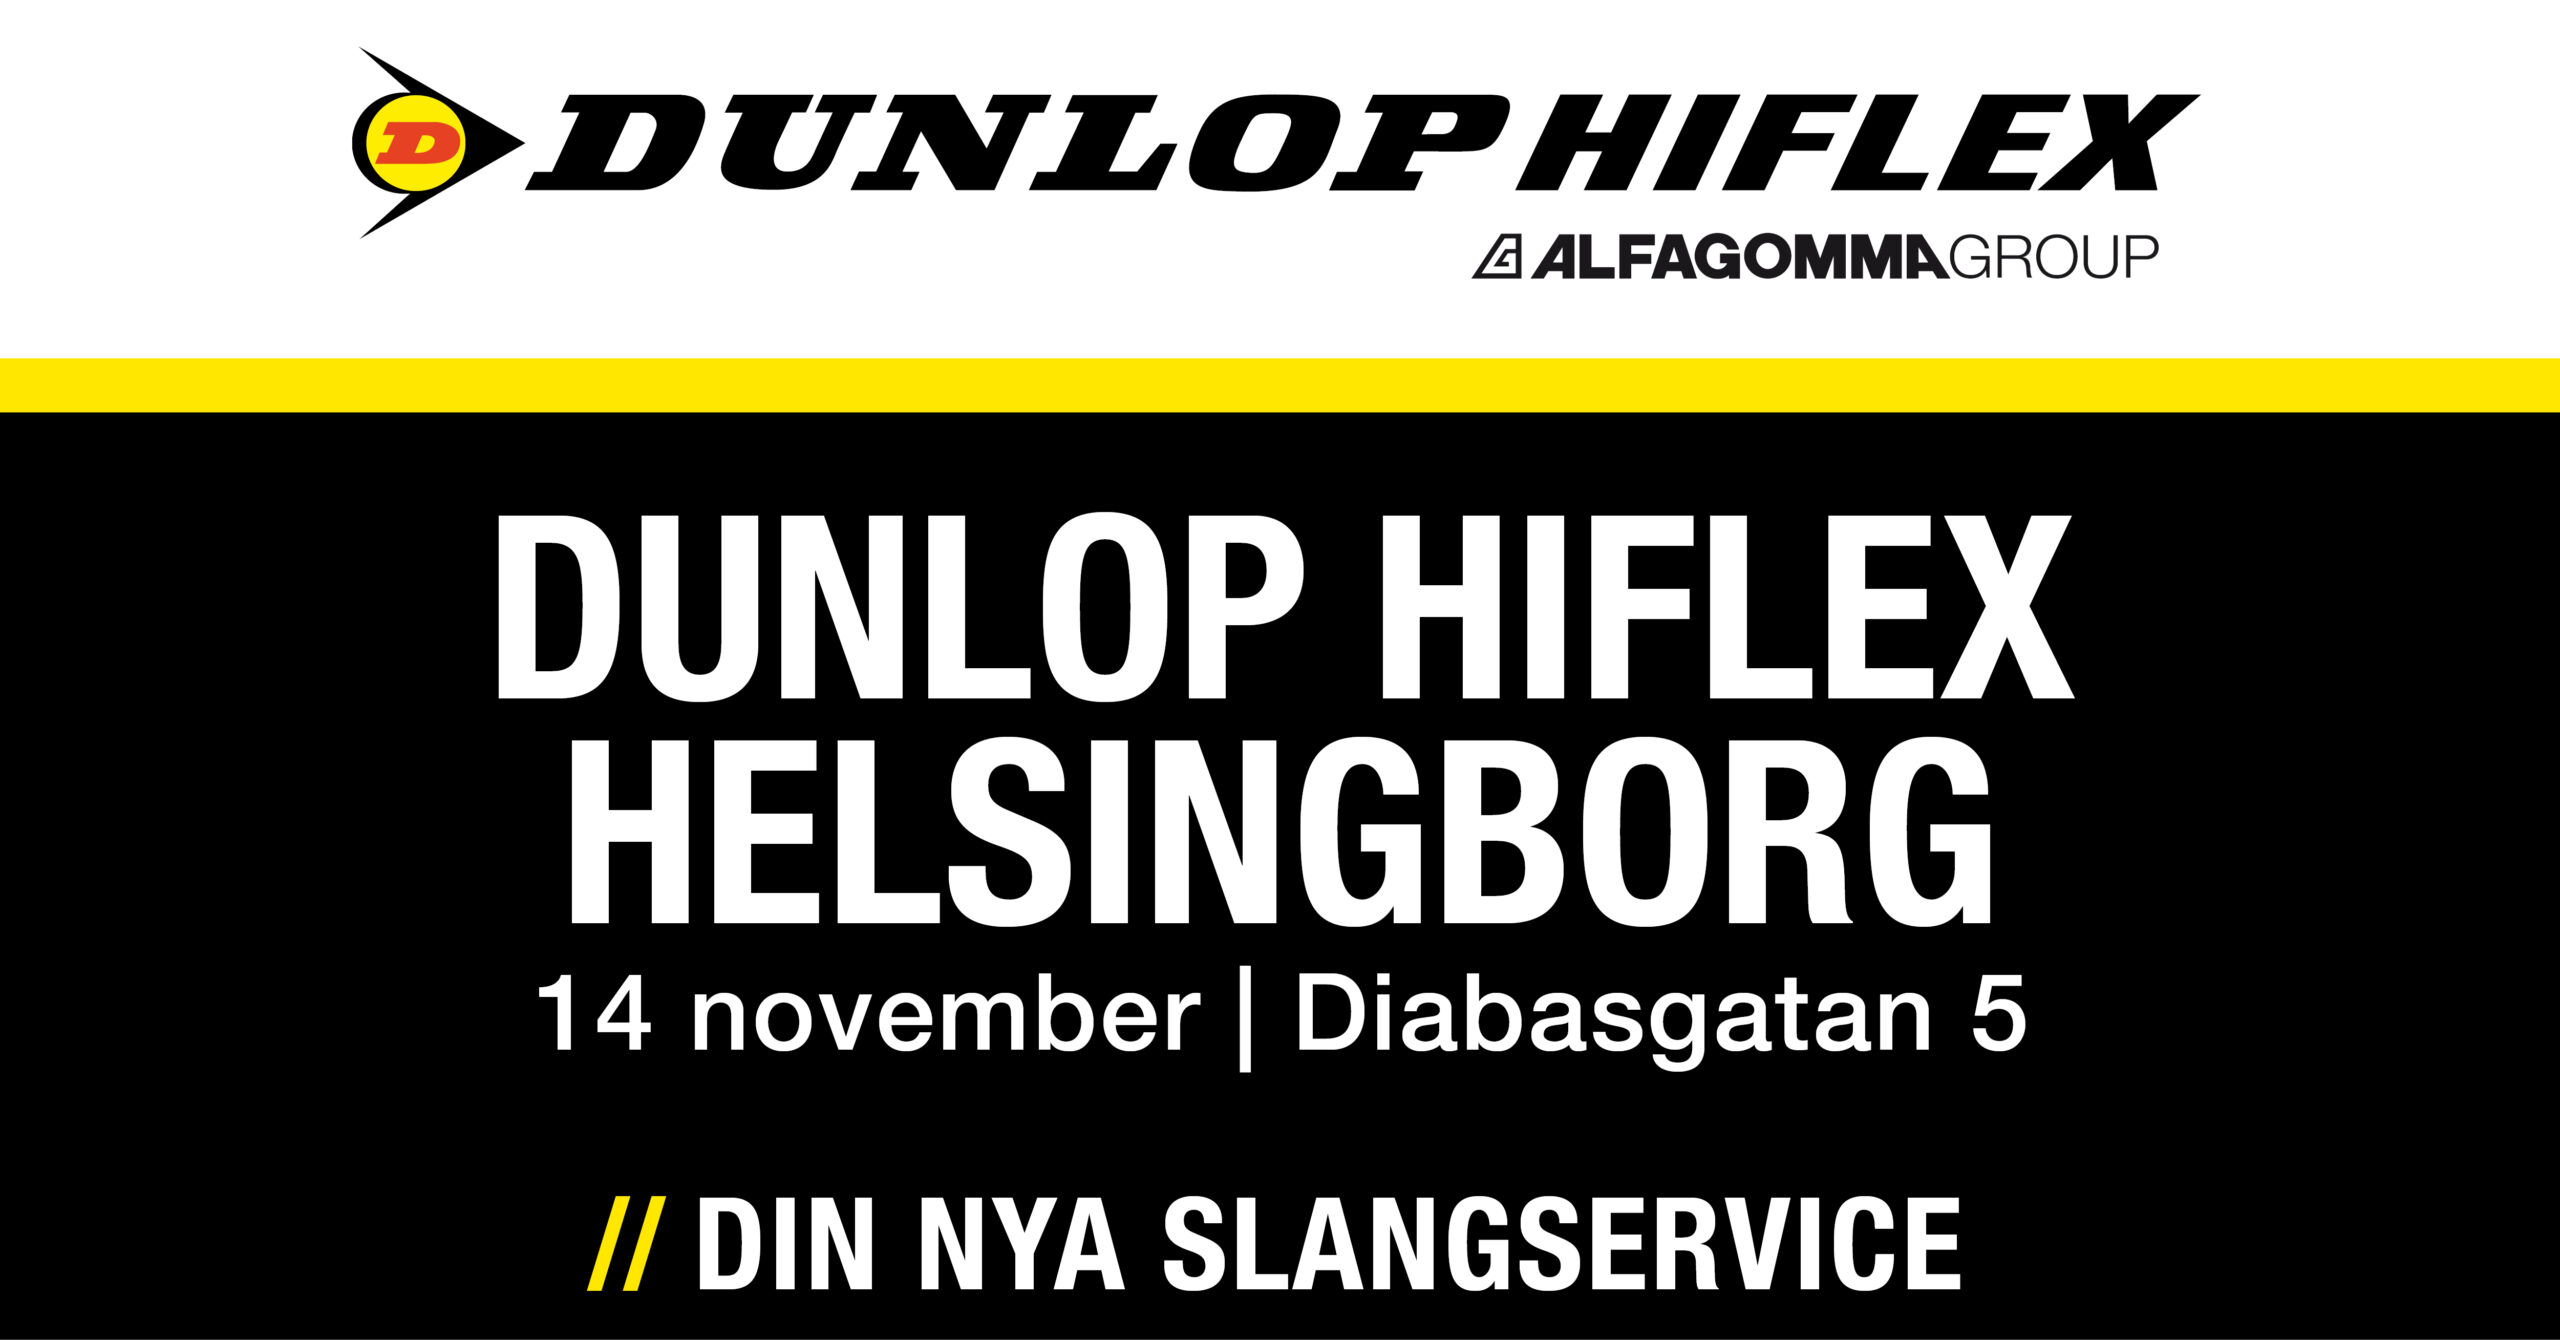 Dunlop Hiflex Helsingborg Diabasgatan 5